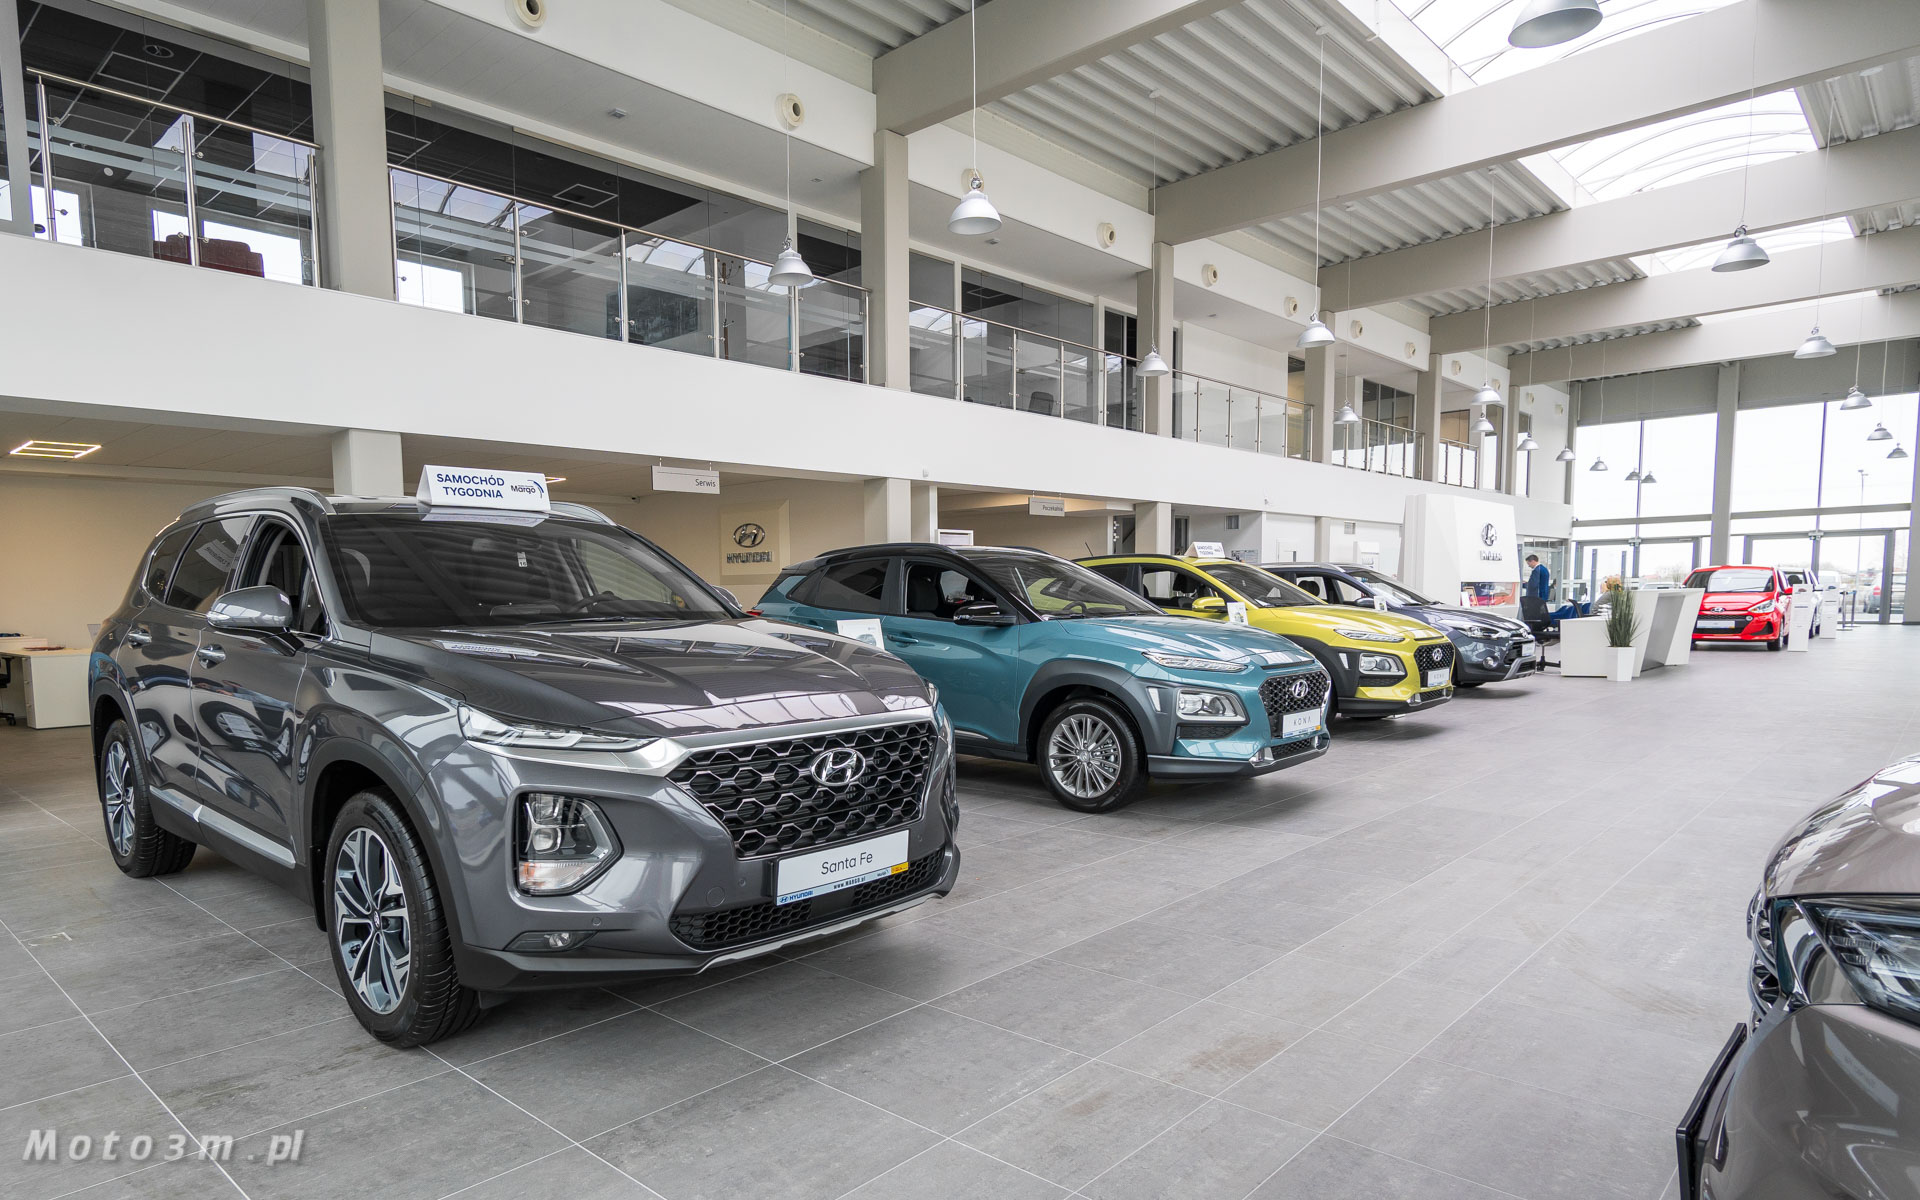 Nowy salon Hyundai Margo w Gdańsku rozpoczął działalność